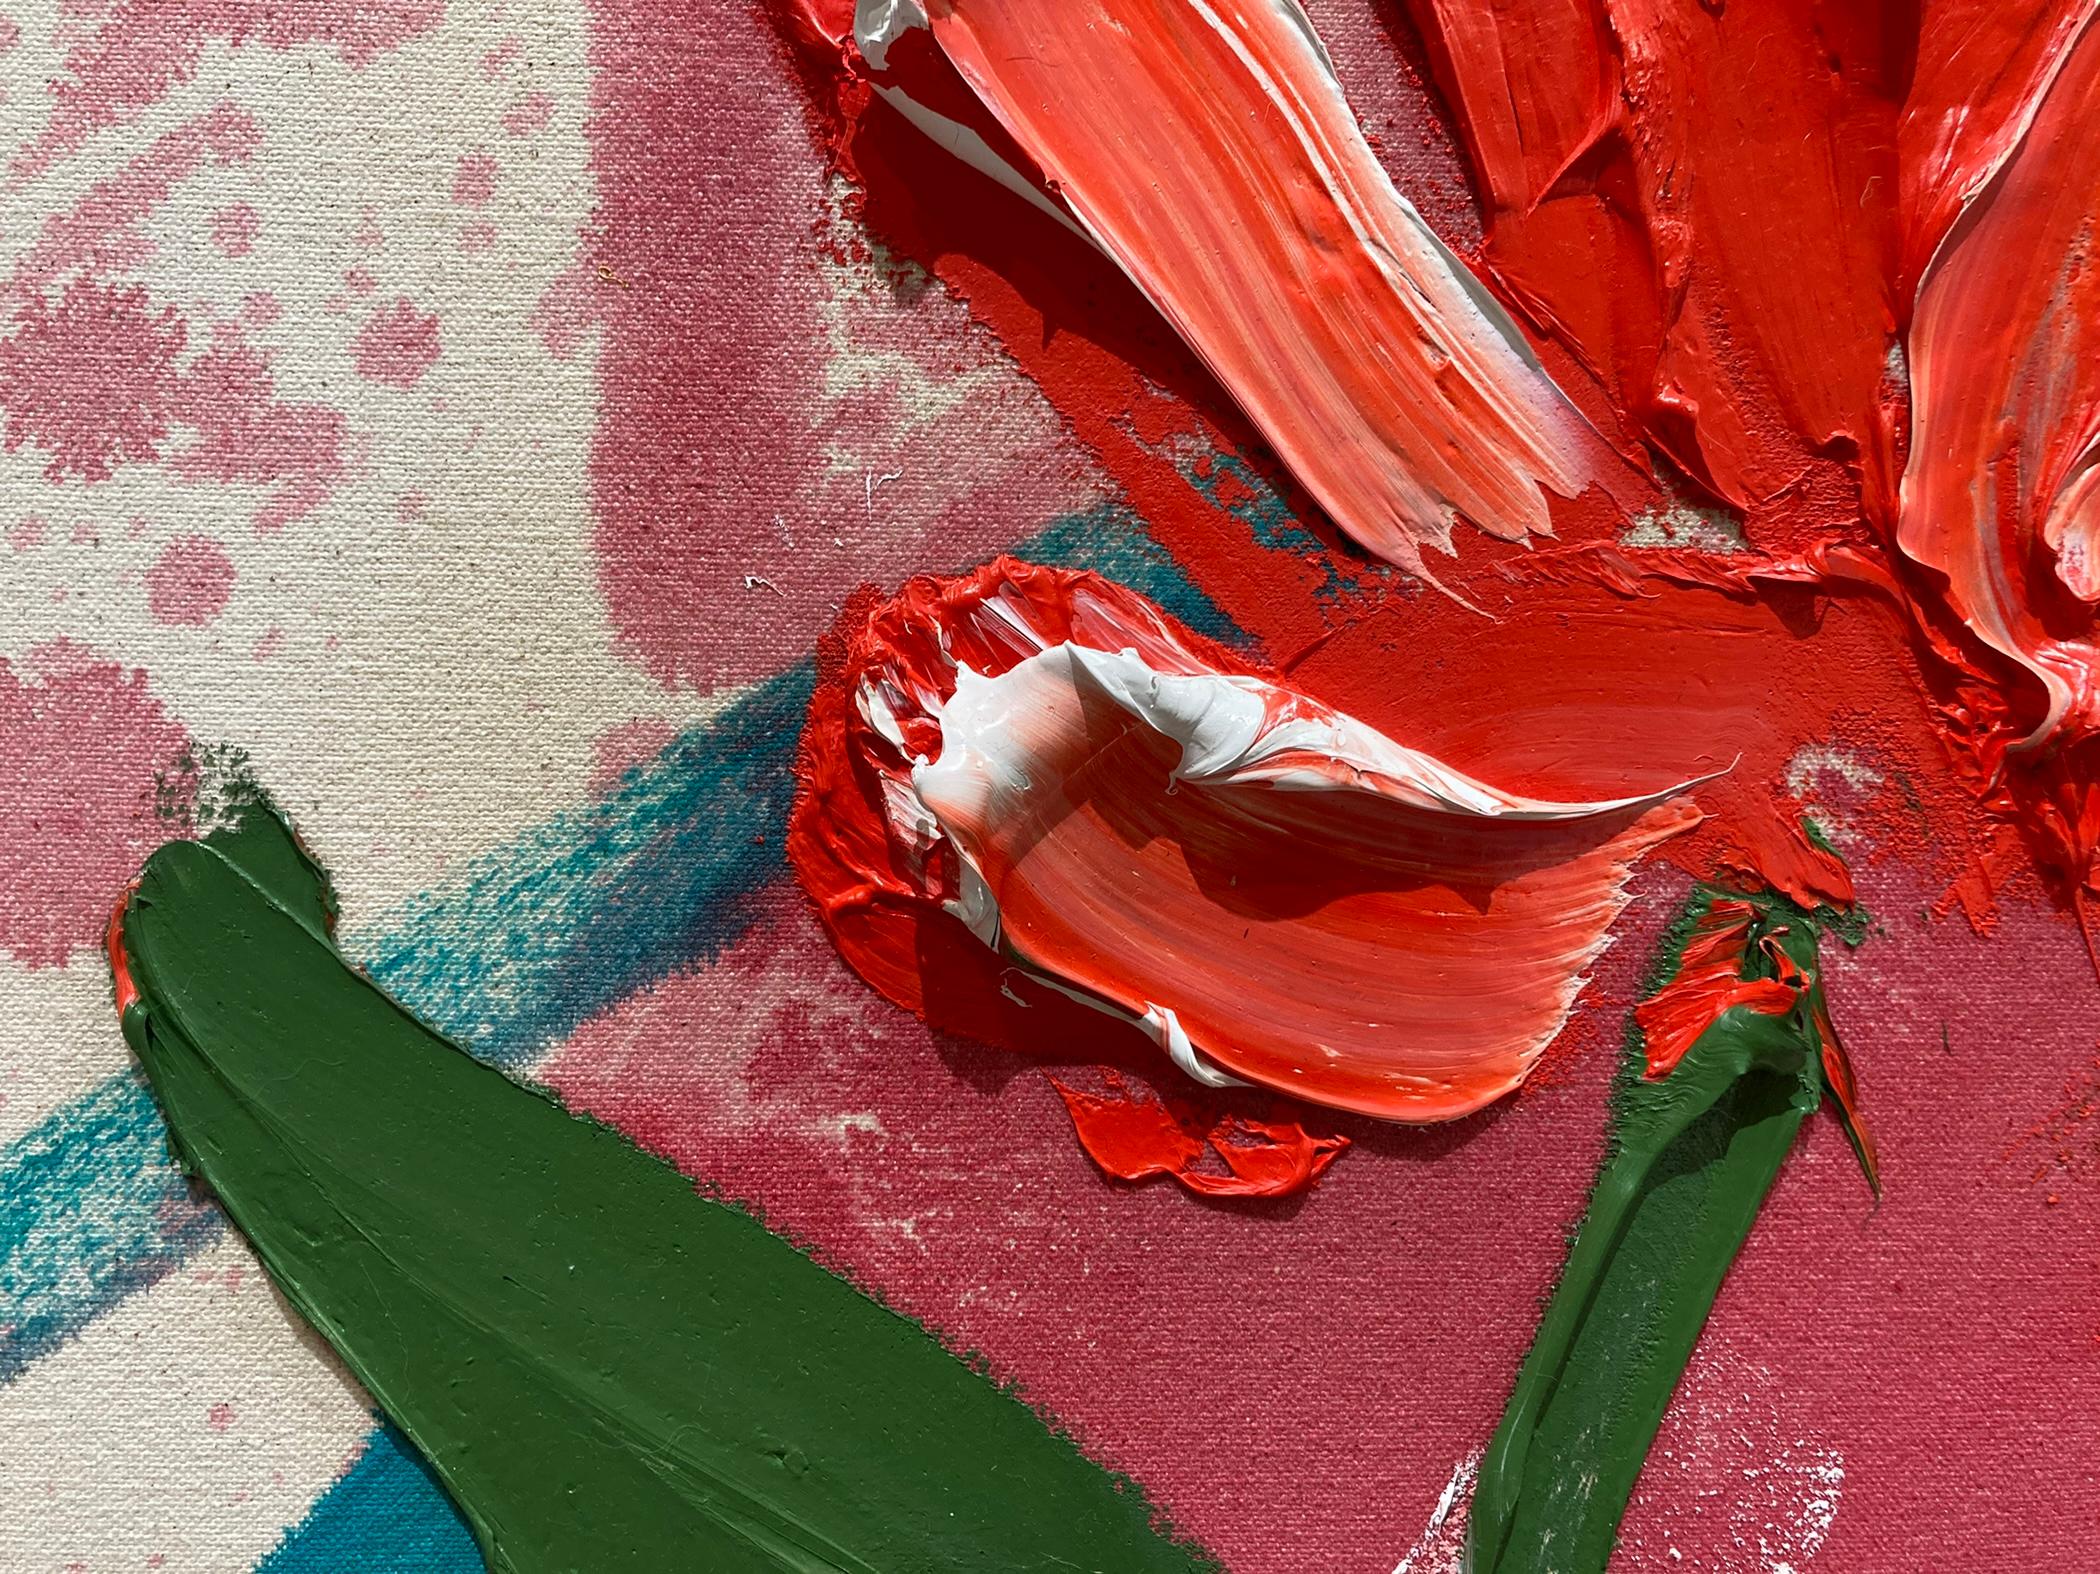 Le rouge sur le rouge - Rouge Abstract Painting par Darius Yektai